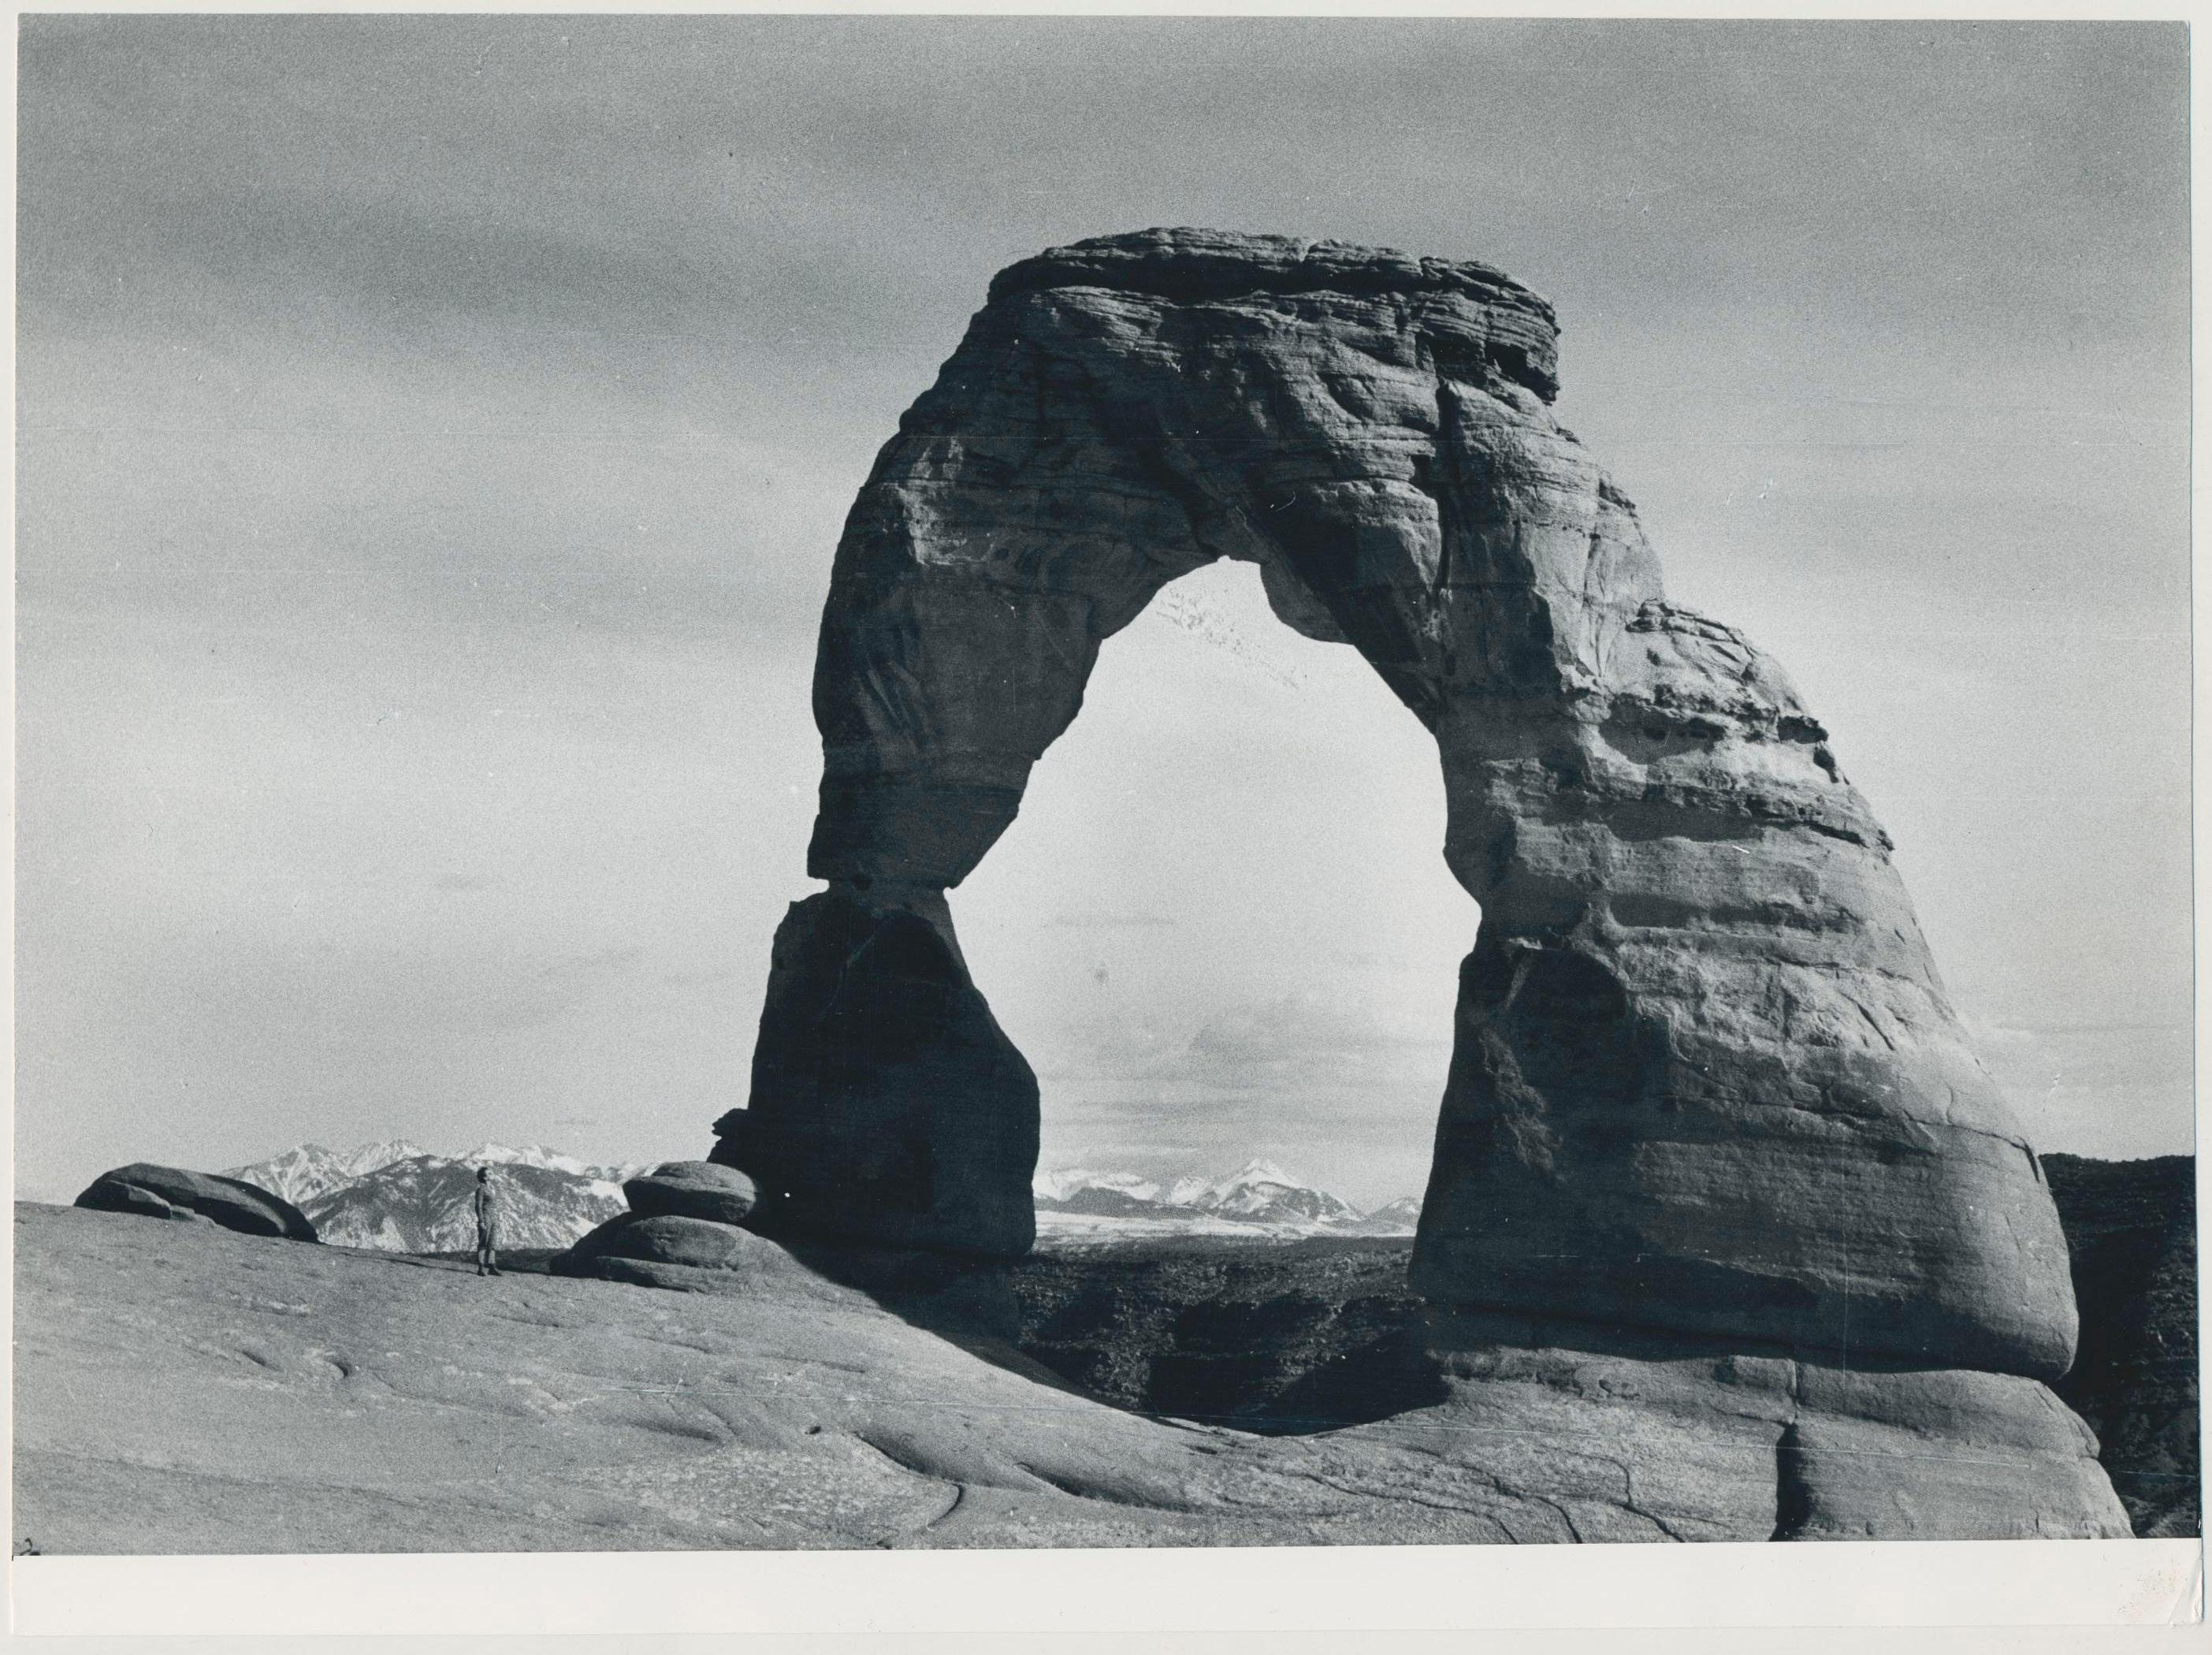 Arches Nationalpark, Utah, Black and White, USA 1960s, 17, 3 x 23, 3 cm